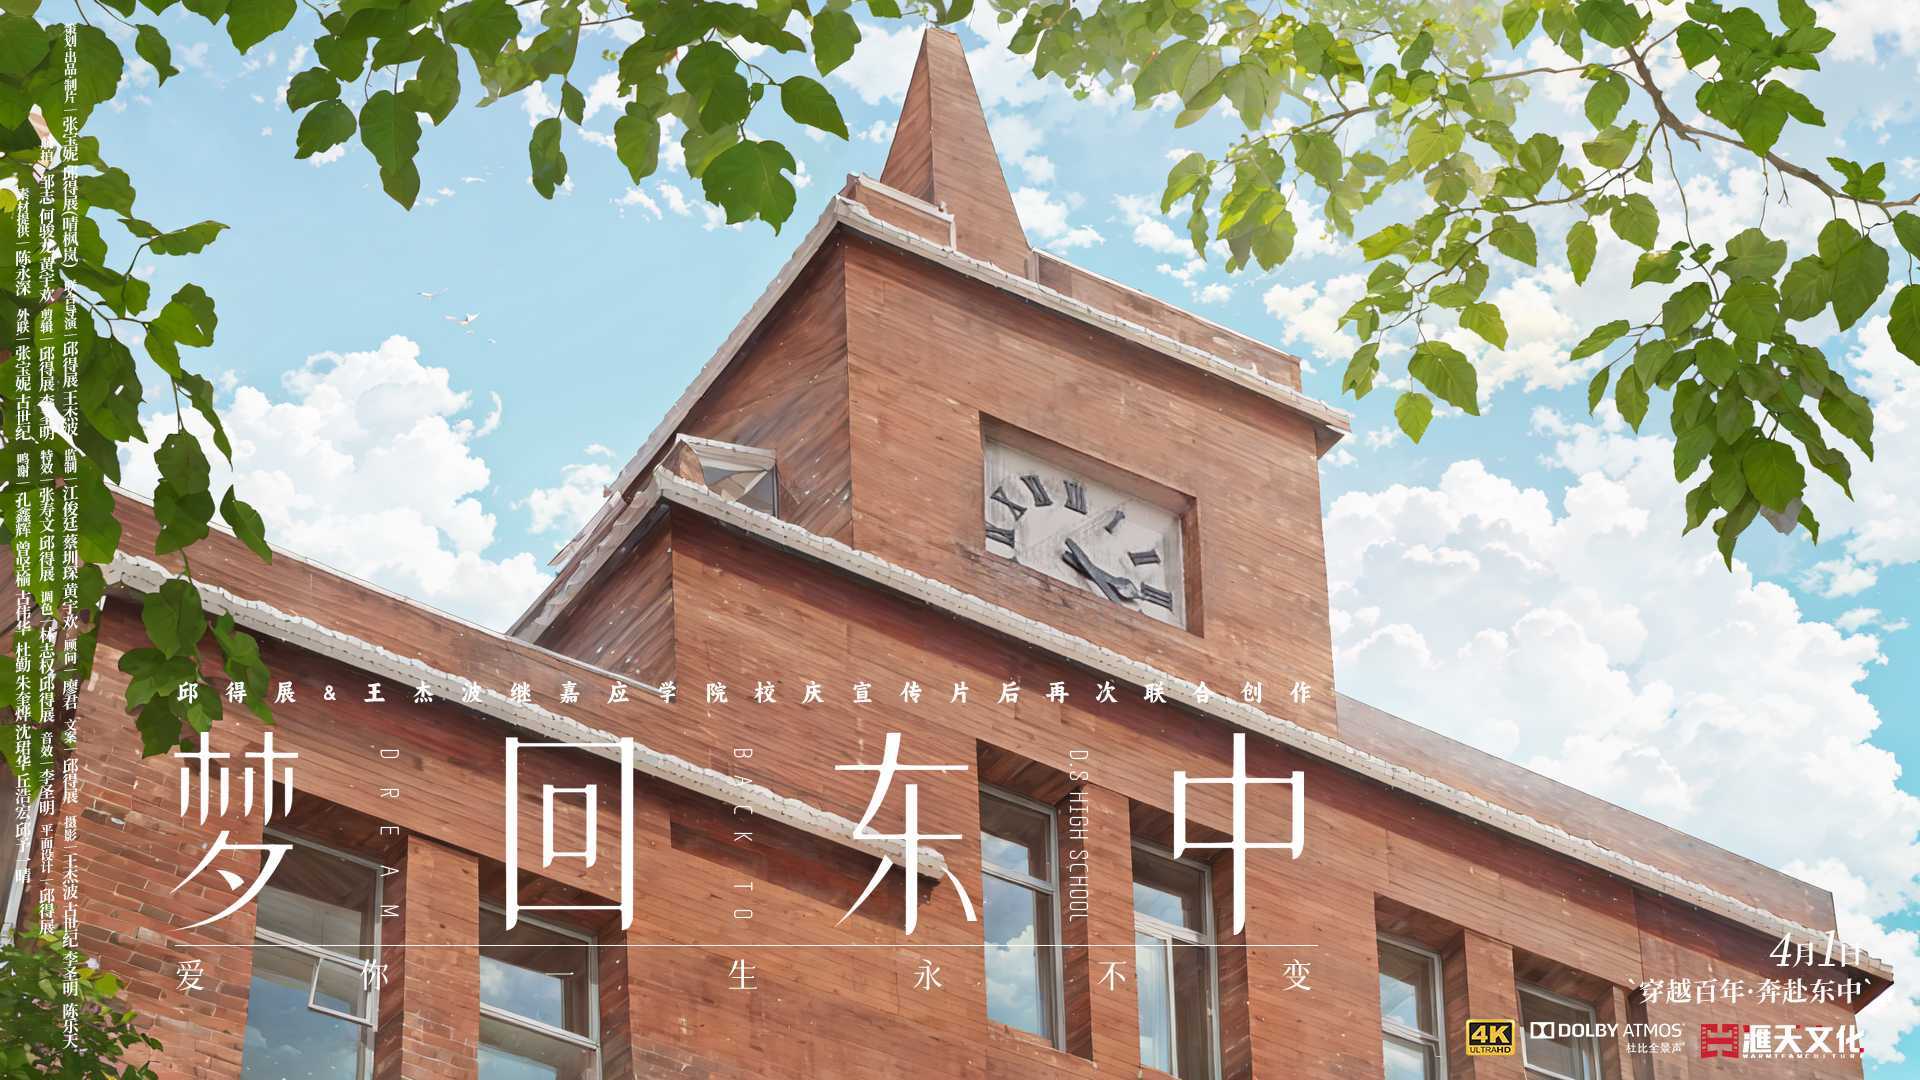 广东梅县东山中学周年校庆主题宣传视频《梦回东中》「人非」篇